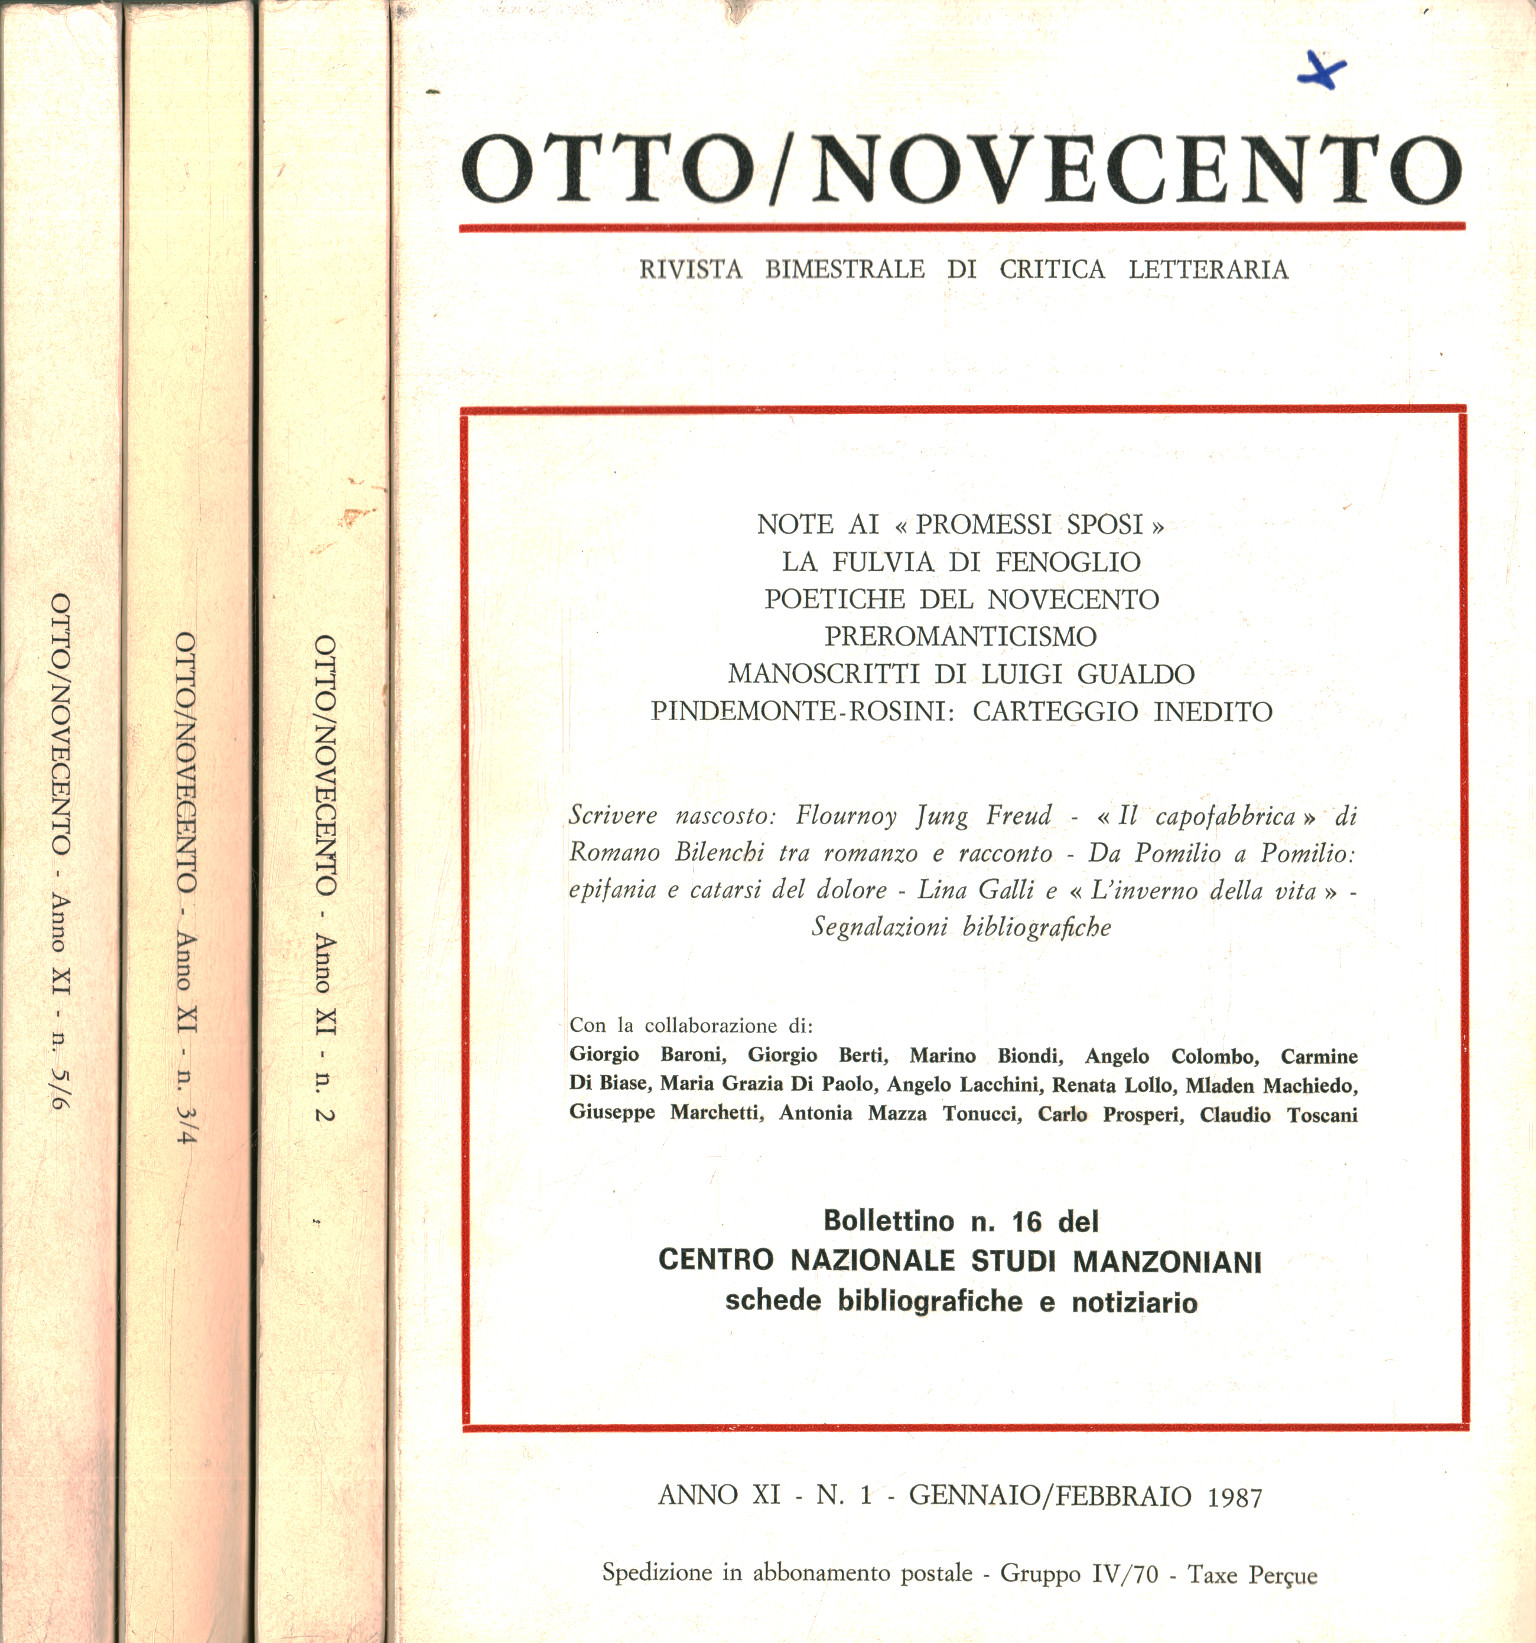 Otto/Novecento: zweimonatliche Überprüfung der krit